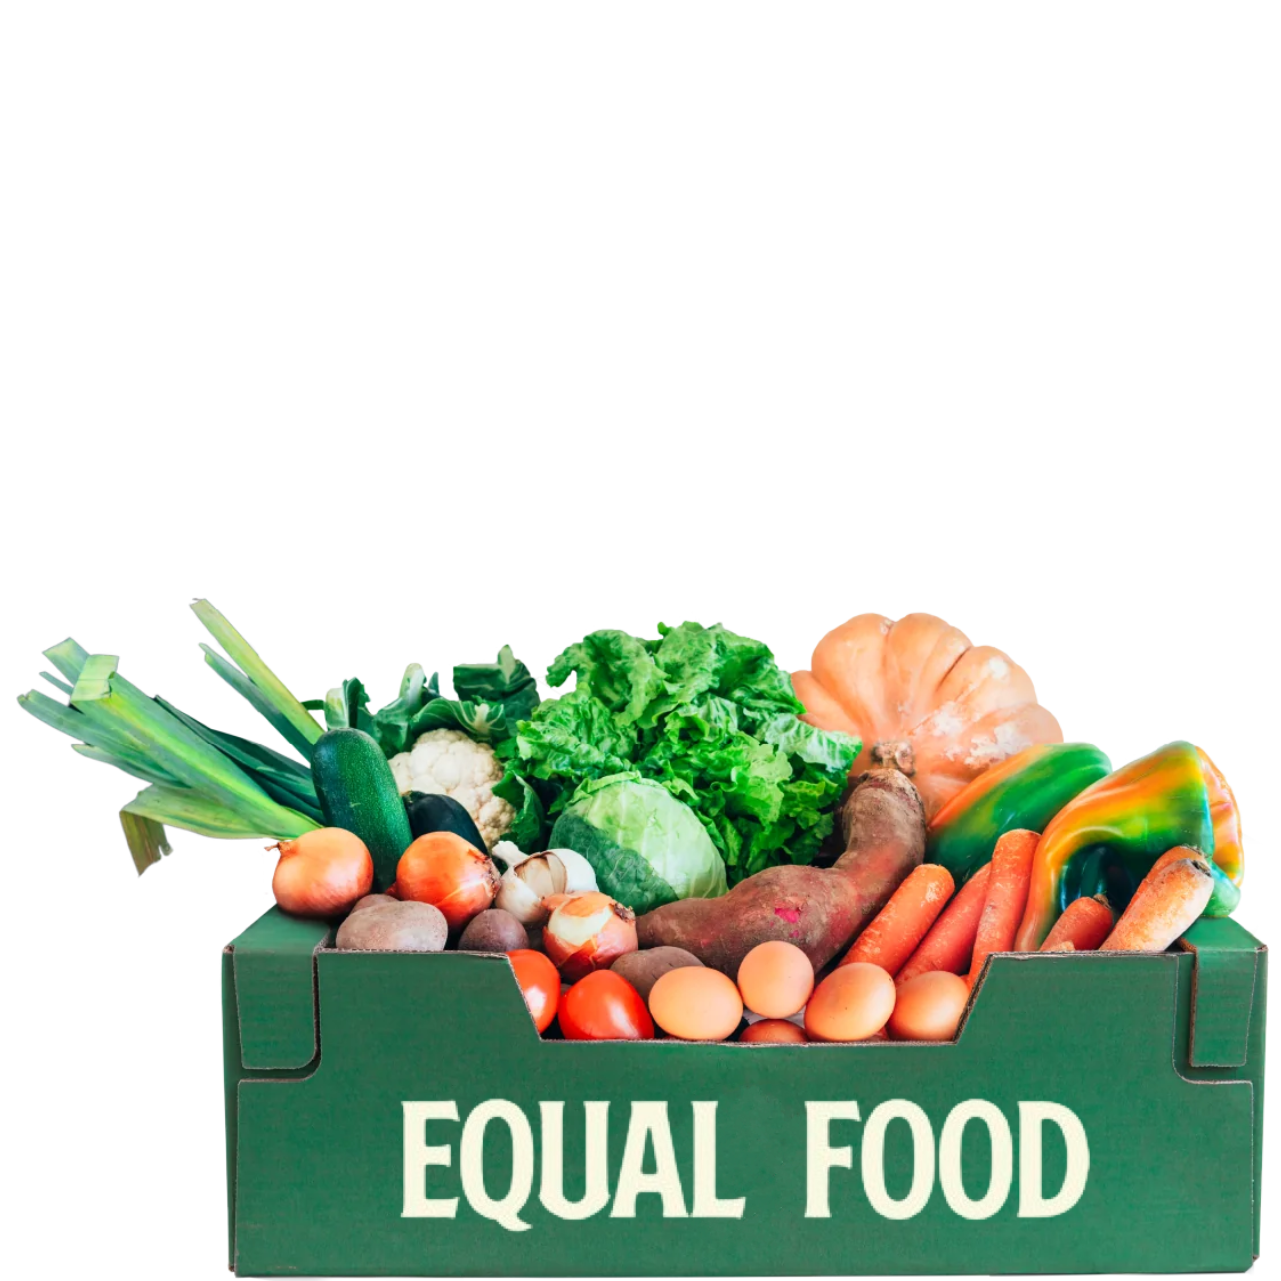 Cabaz de Legumes - Equal Food